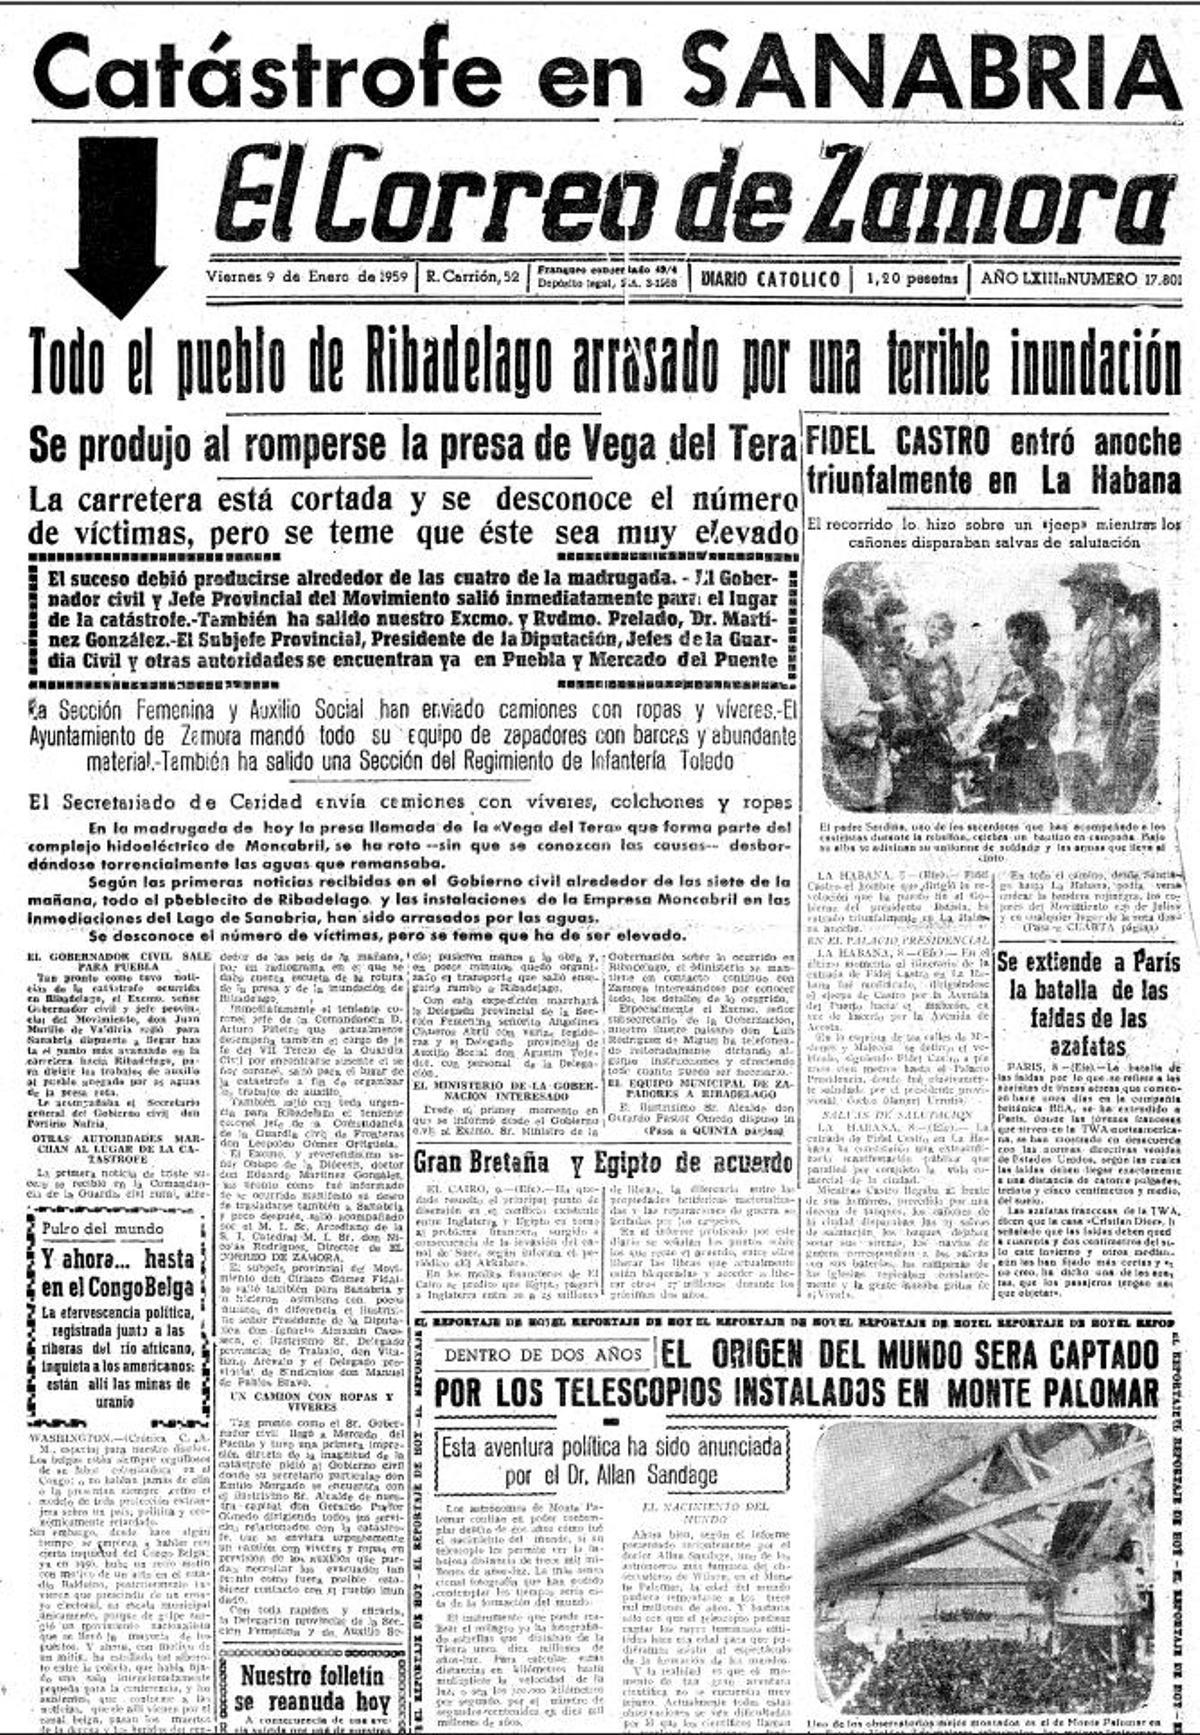 Portada de EL CORREO DE ZAMORA publicada el viernes 9 de enero de 1959